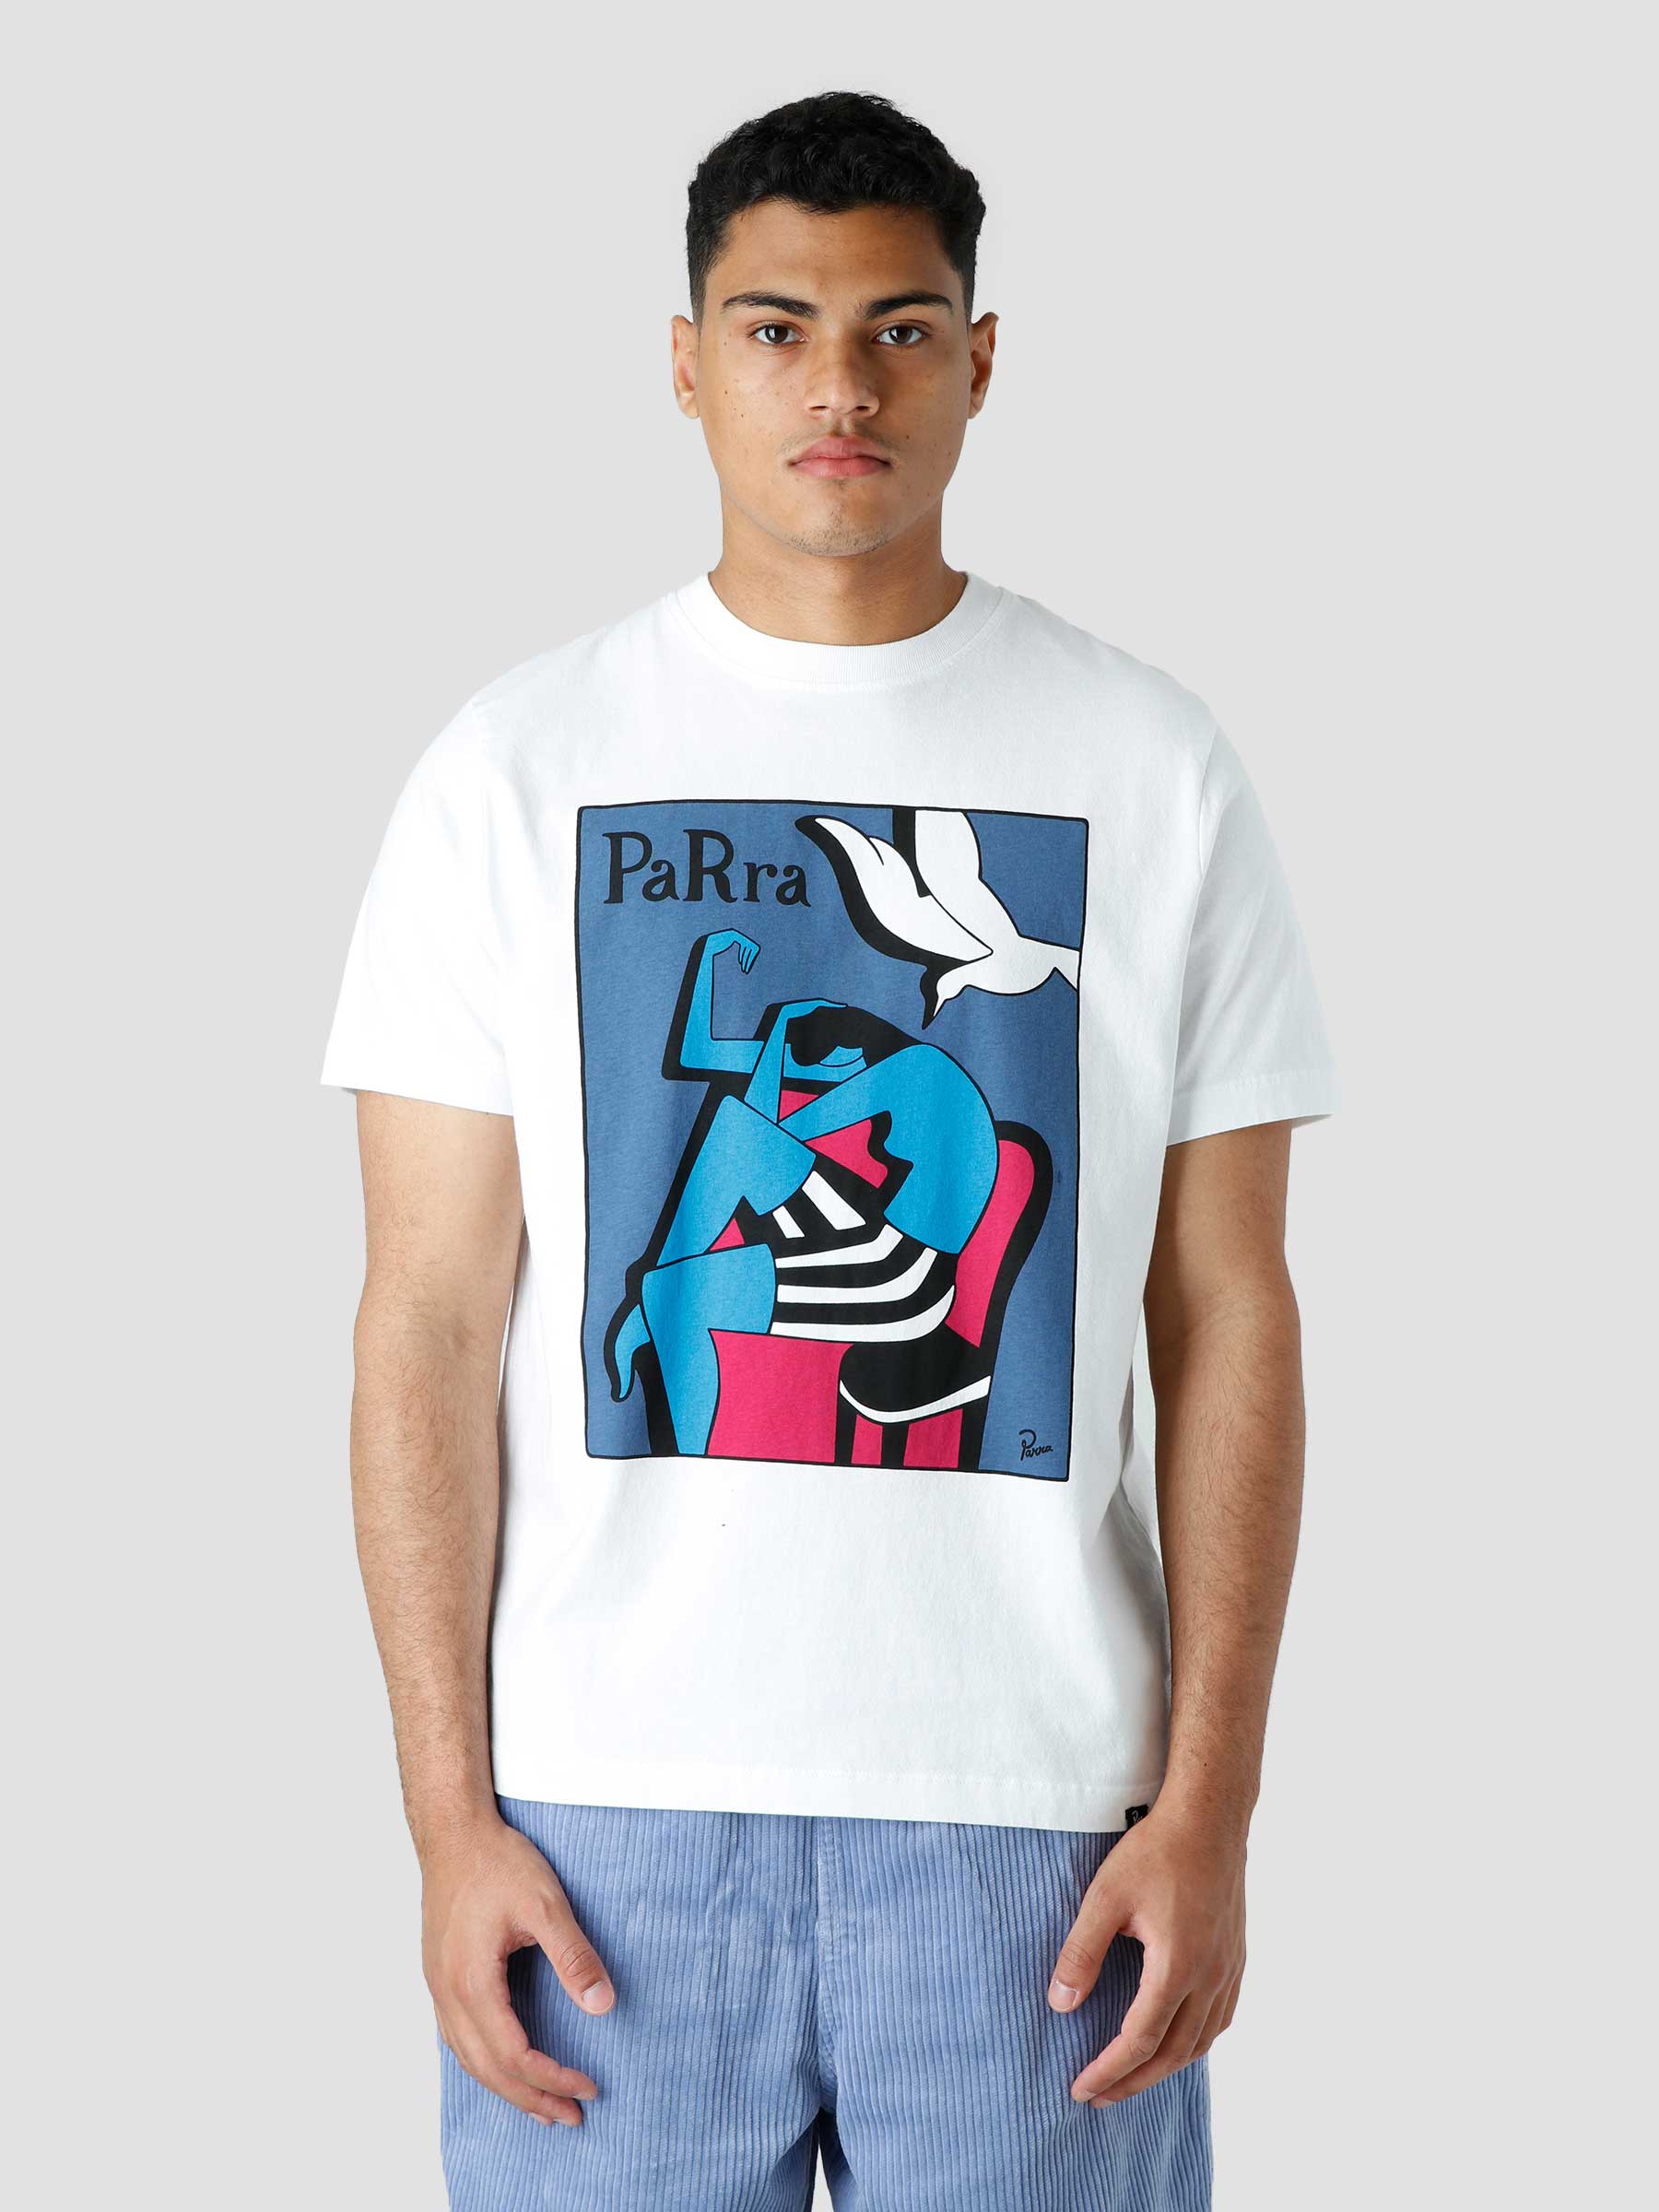 ByParra Bird Attack T-shirt
